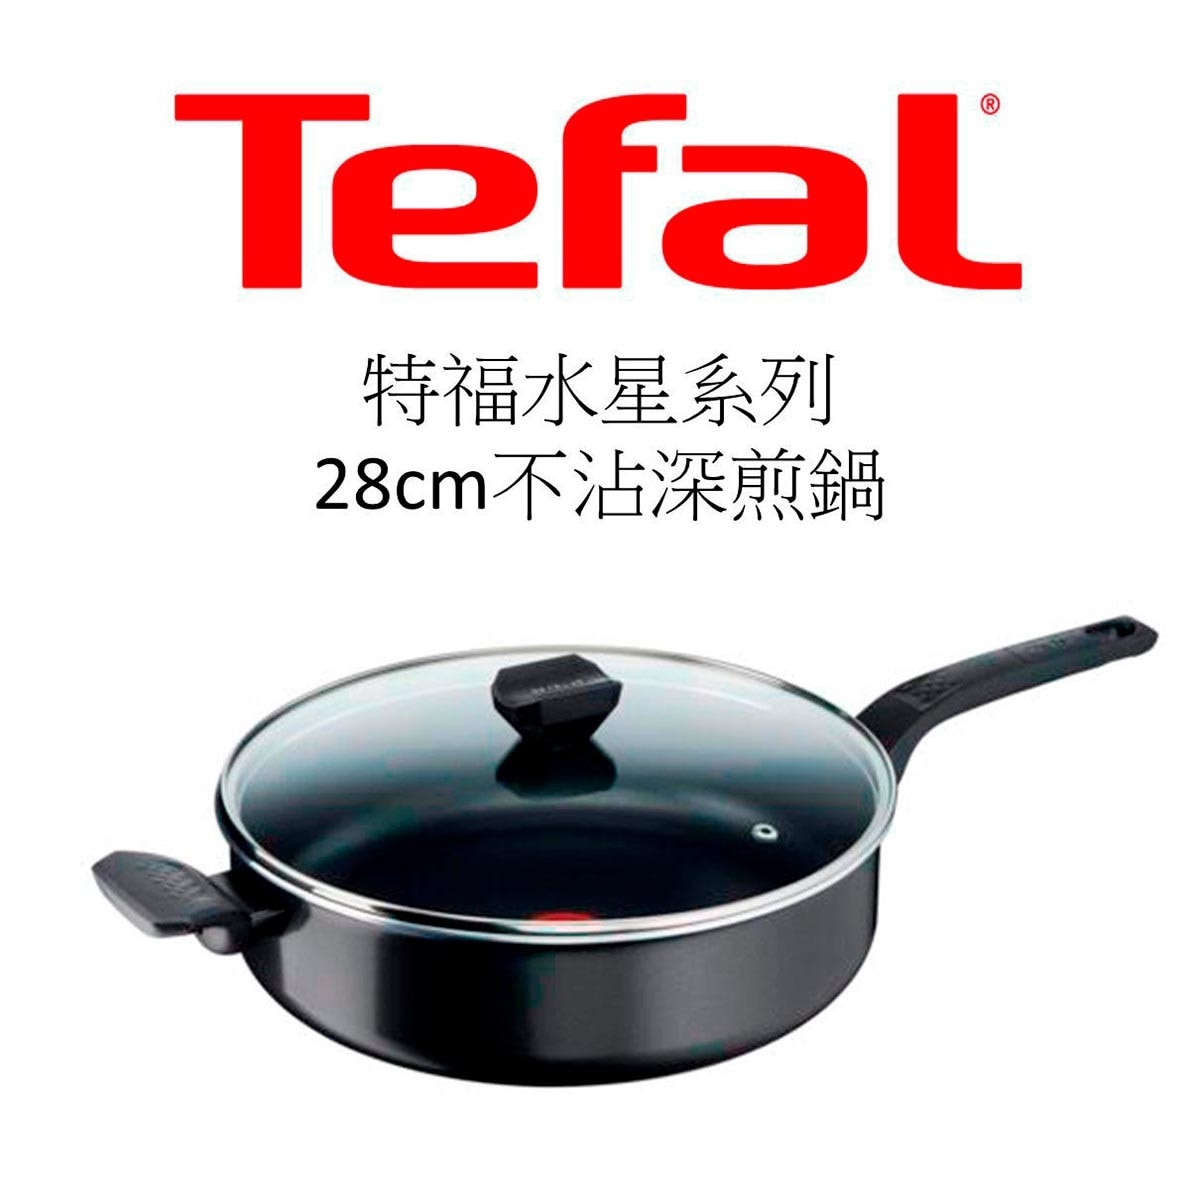 Tefal 法國特福水星系列28CM不沾深煎鍋，耐用不沾塗層，少油健康烹煮，放射傳導鍋底，均勻導熱，獨家佳溫紅心，掌握最佳烹調溫度。